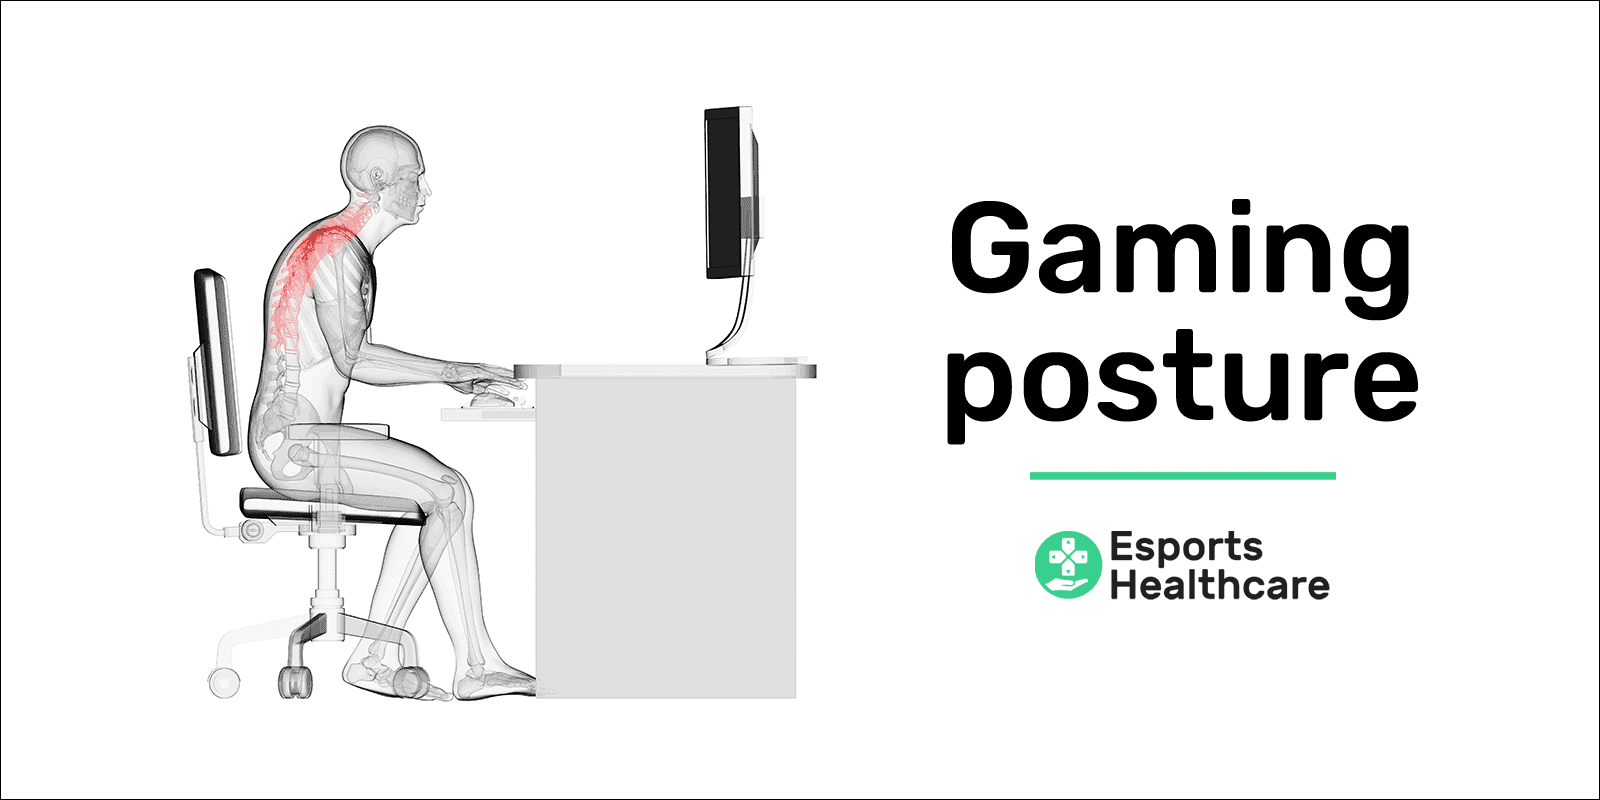 Gaming posture